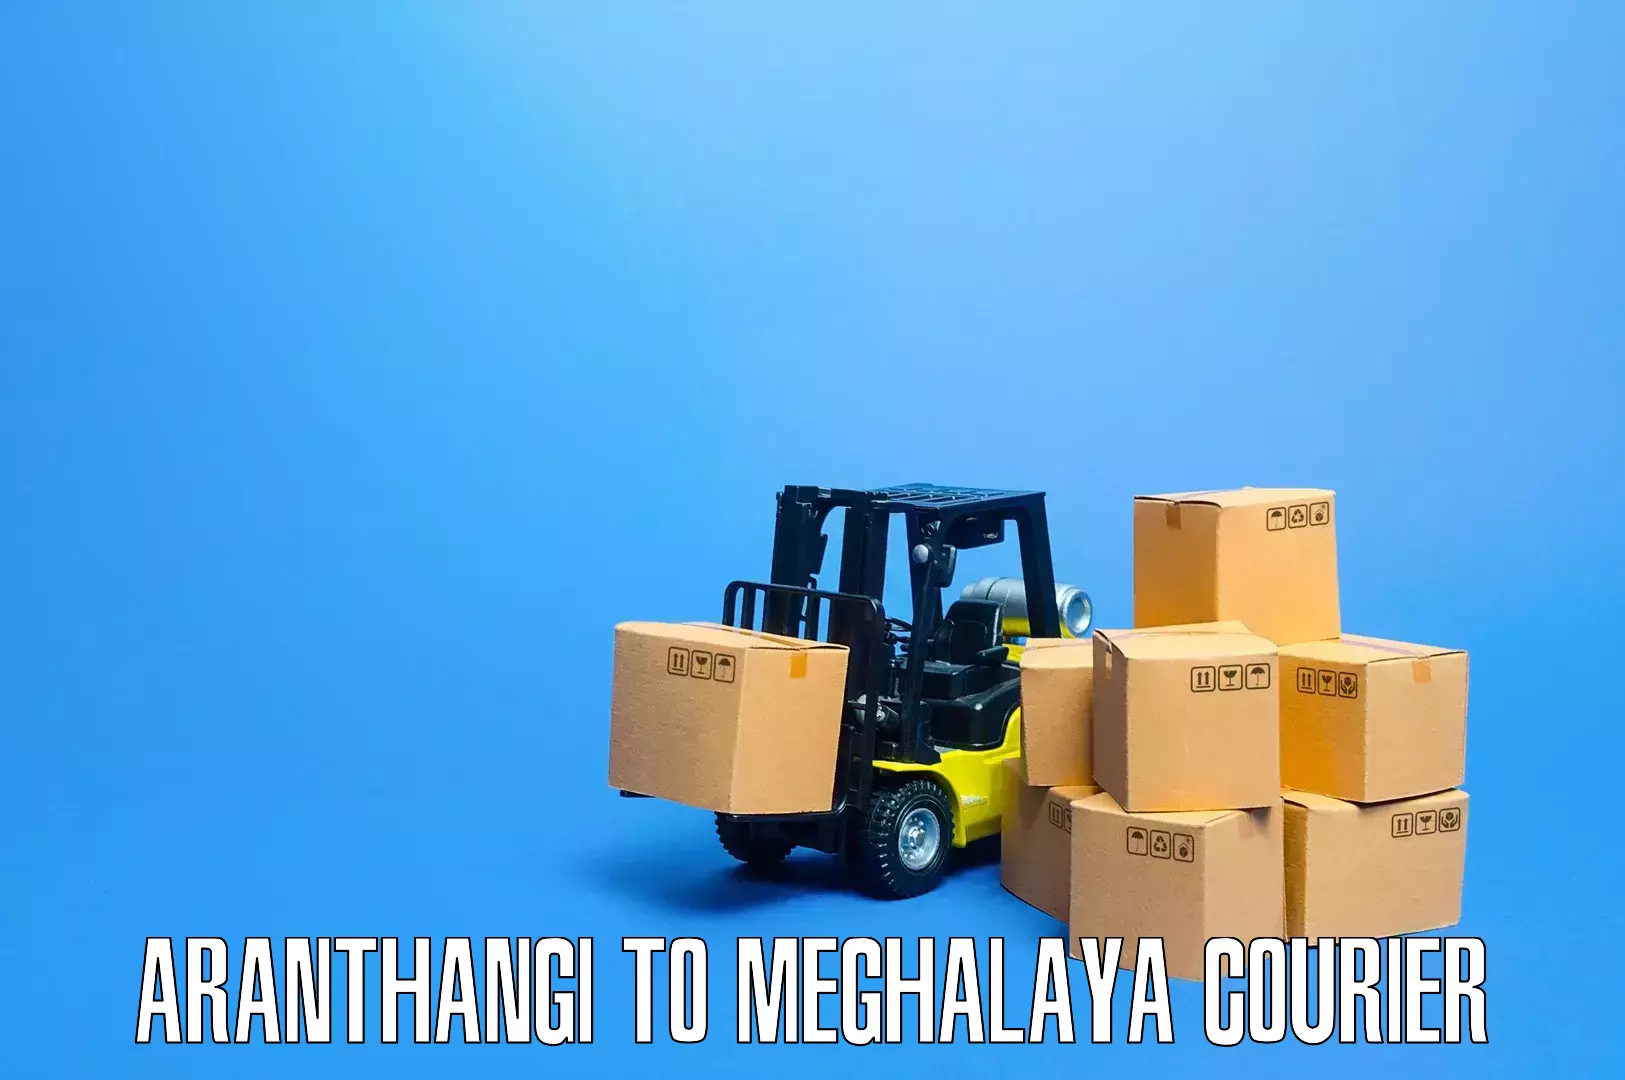 Custom moving and storage Aranthangi to Meghalaya